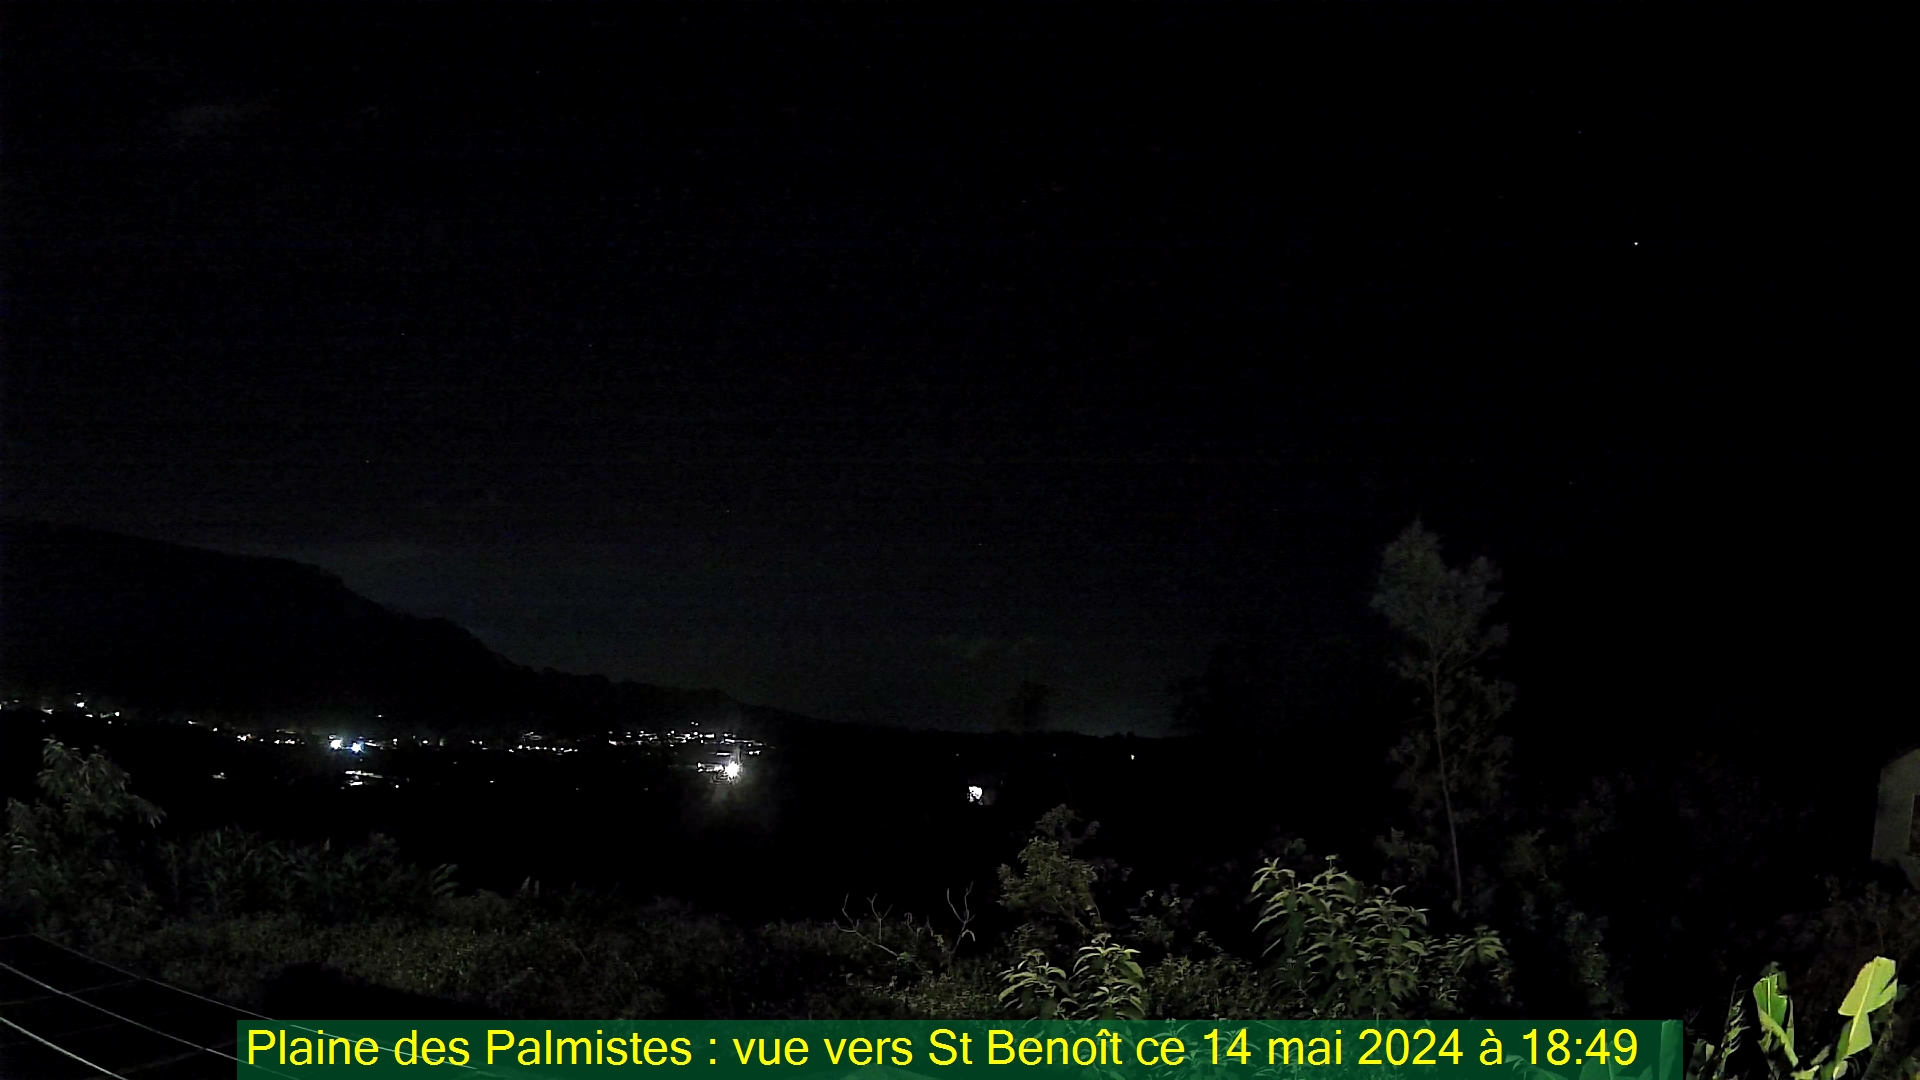 Saint-Denis (Réunion) Mon. 18:50